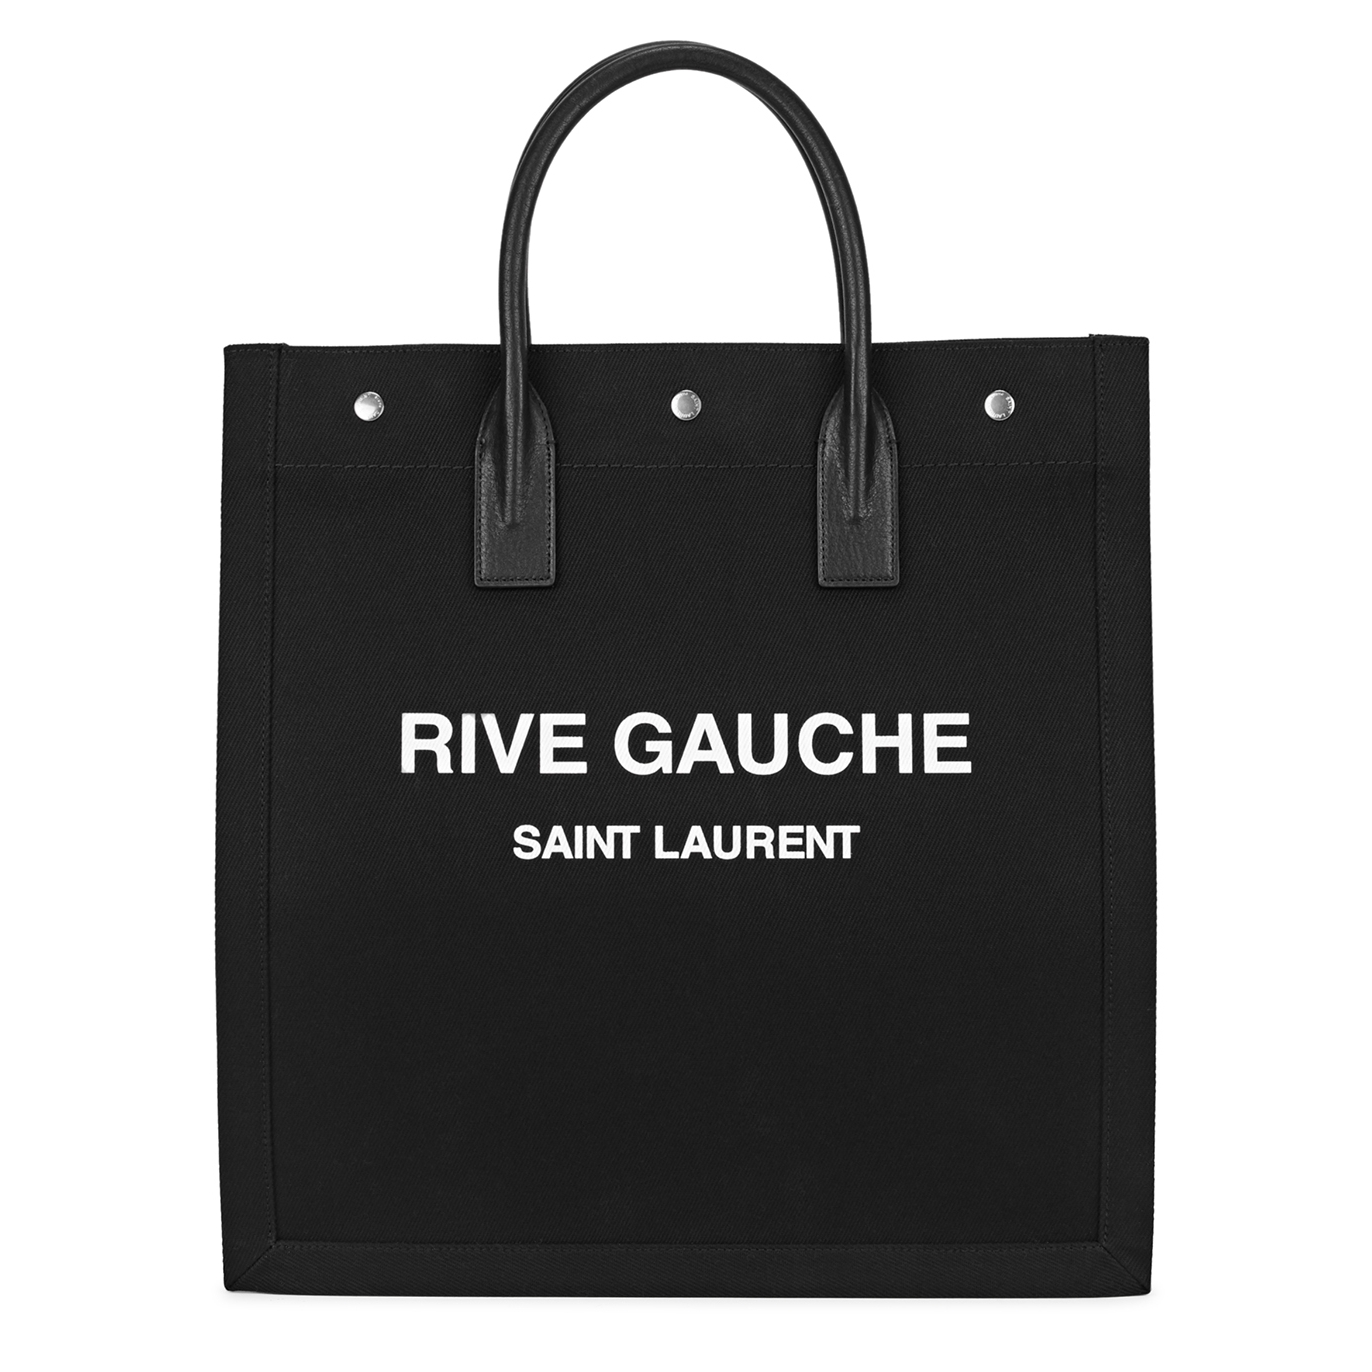 Saint Laurent Rive Gauche Black Canvas Tote, Tote Bag, Black, Canvas